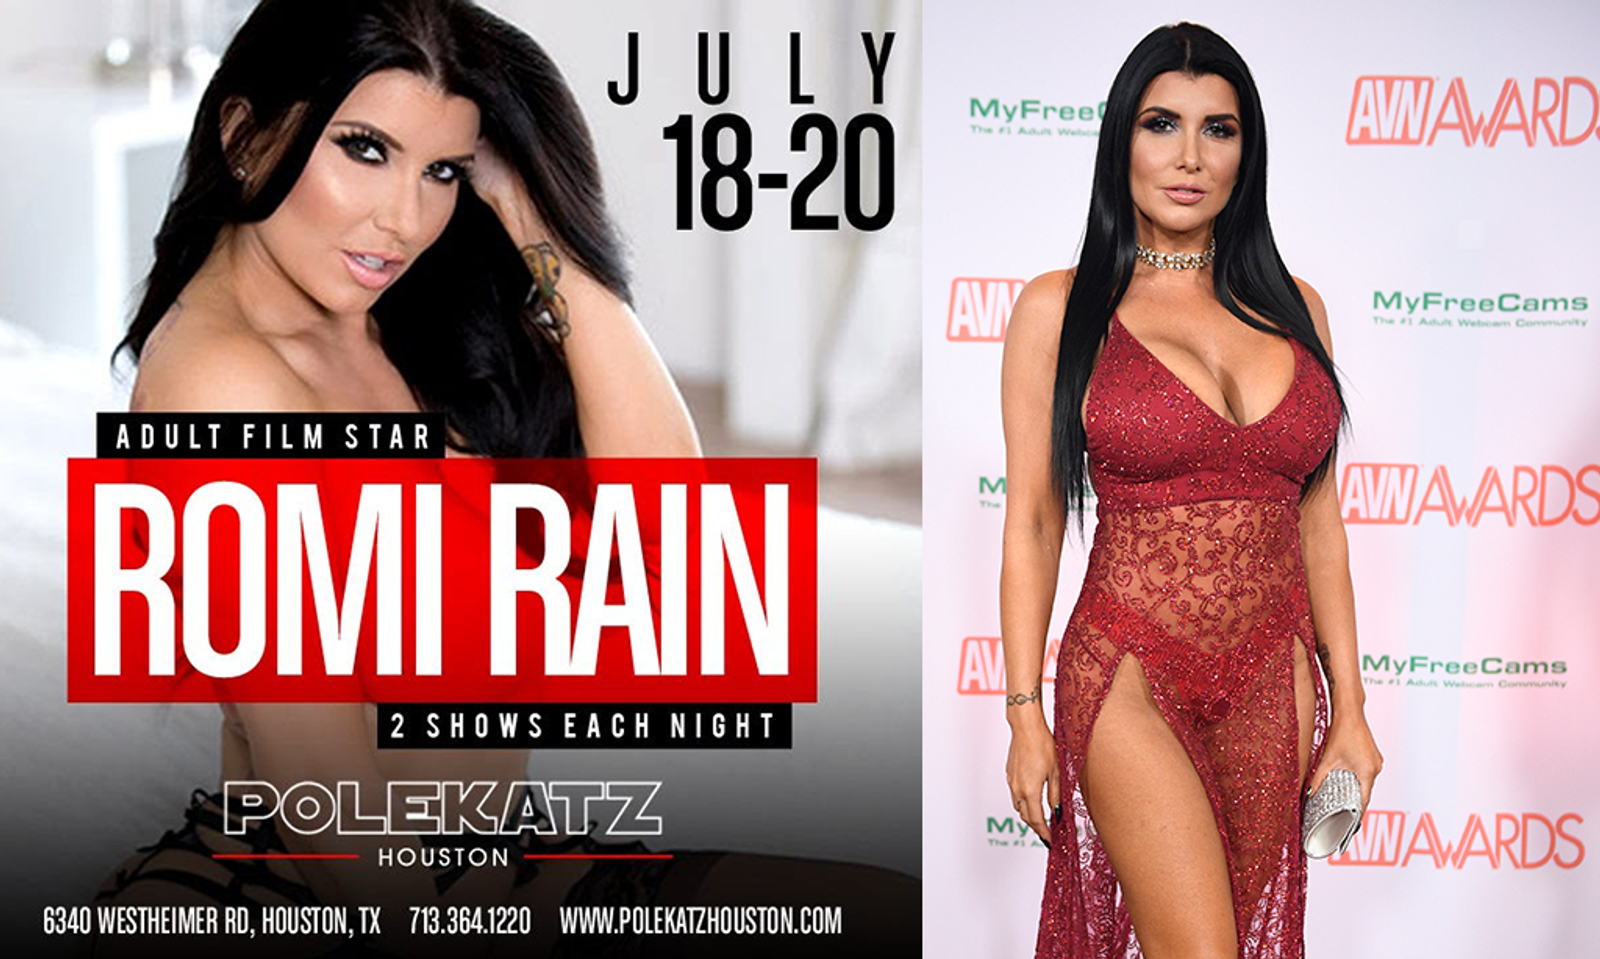 Romi Rain To Feature At Polekatz Gentlemen’s Club In Houston